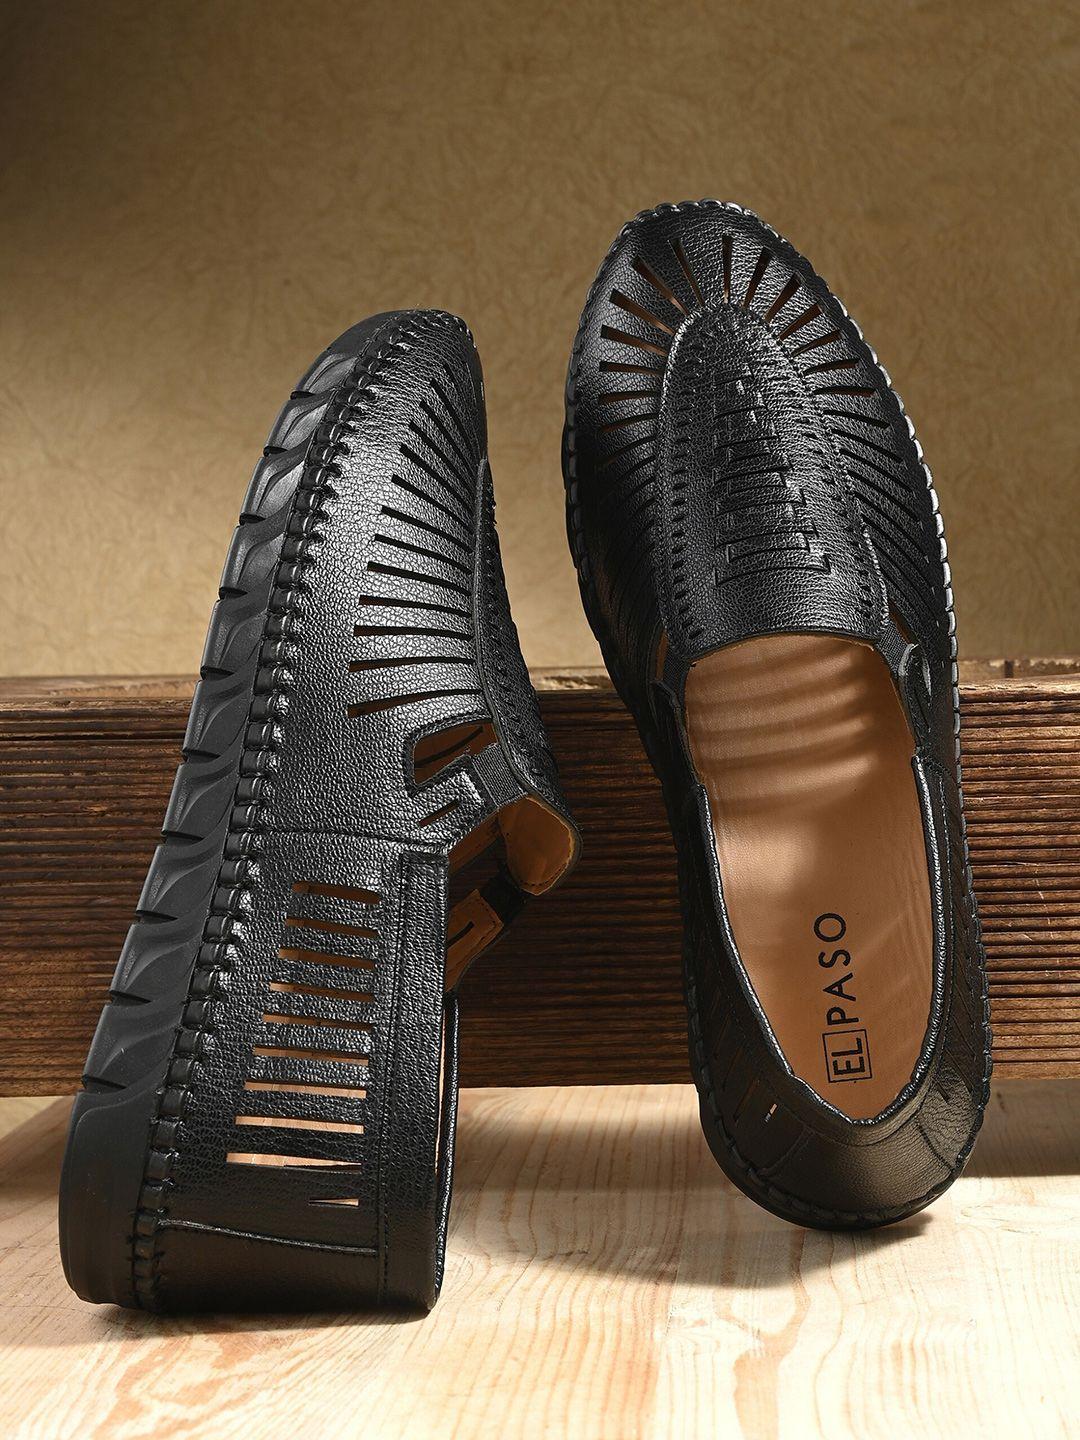 el-paso-men-ethnic-shoe-style-sandals